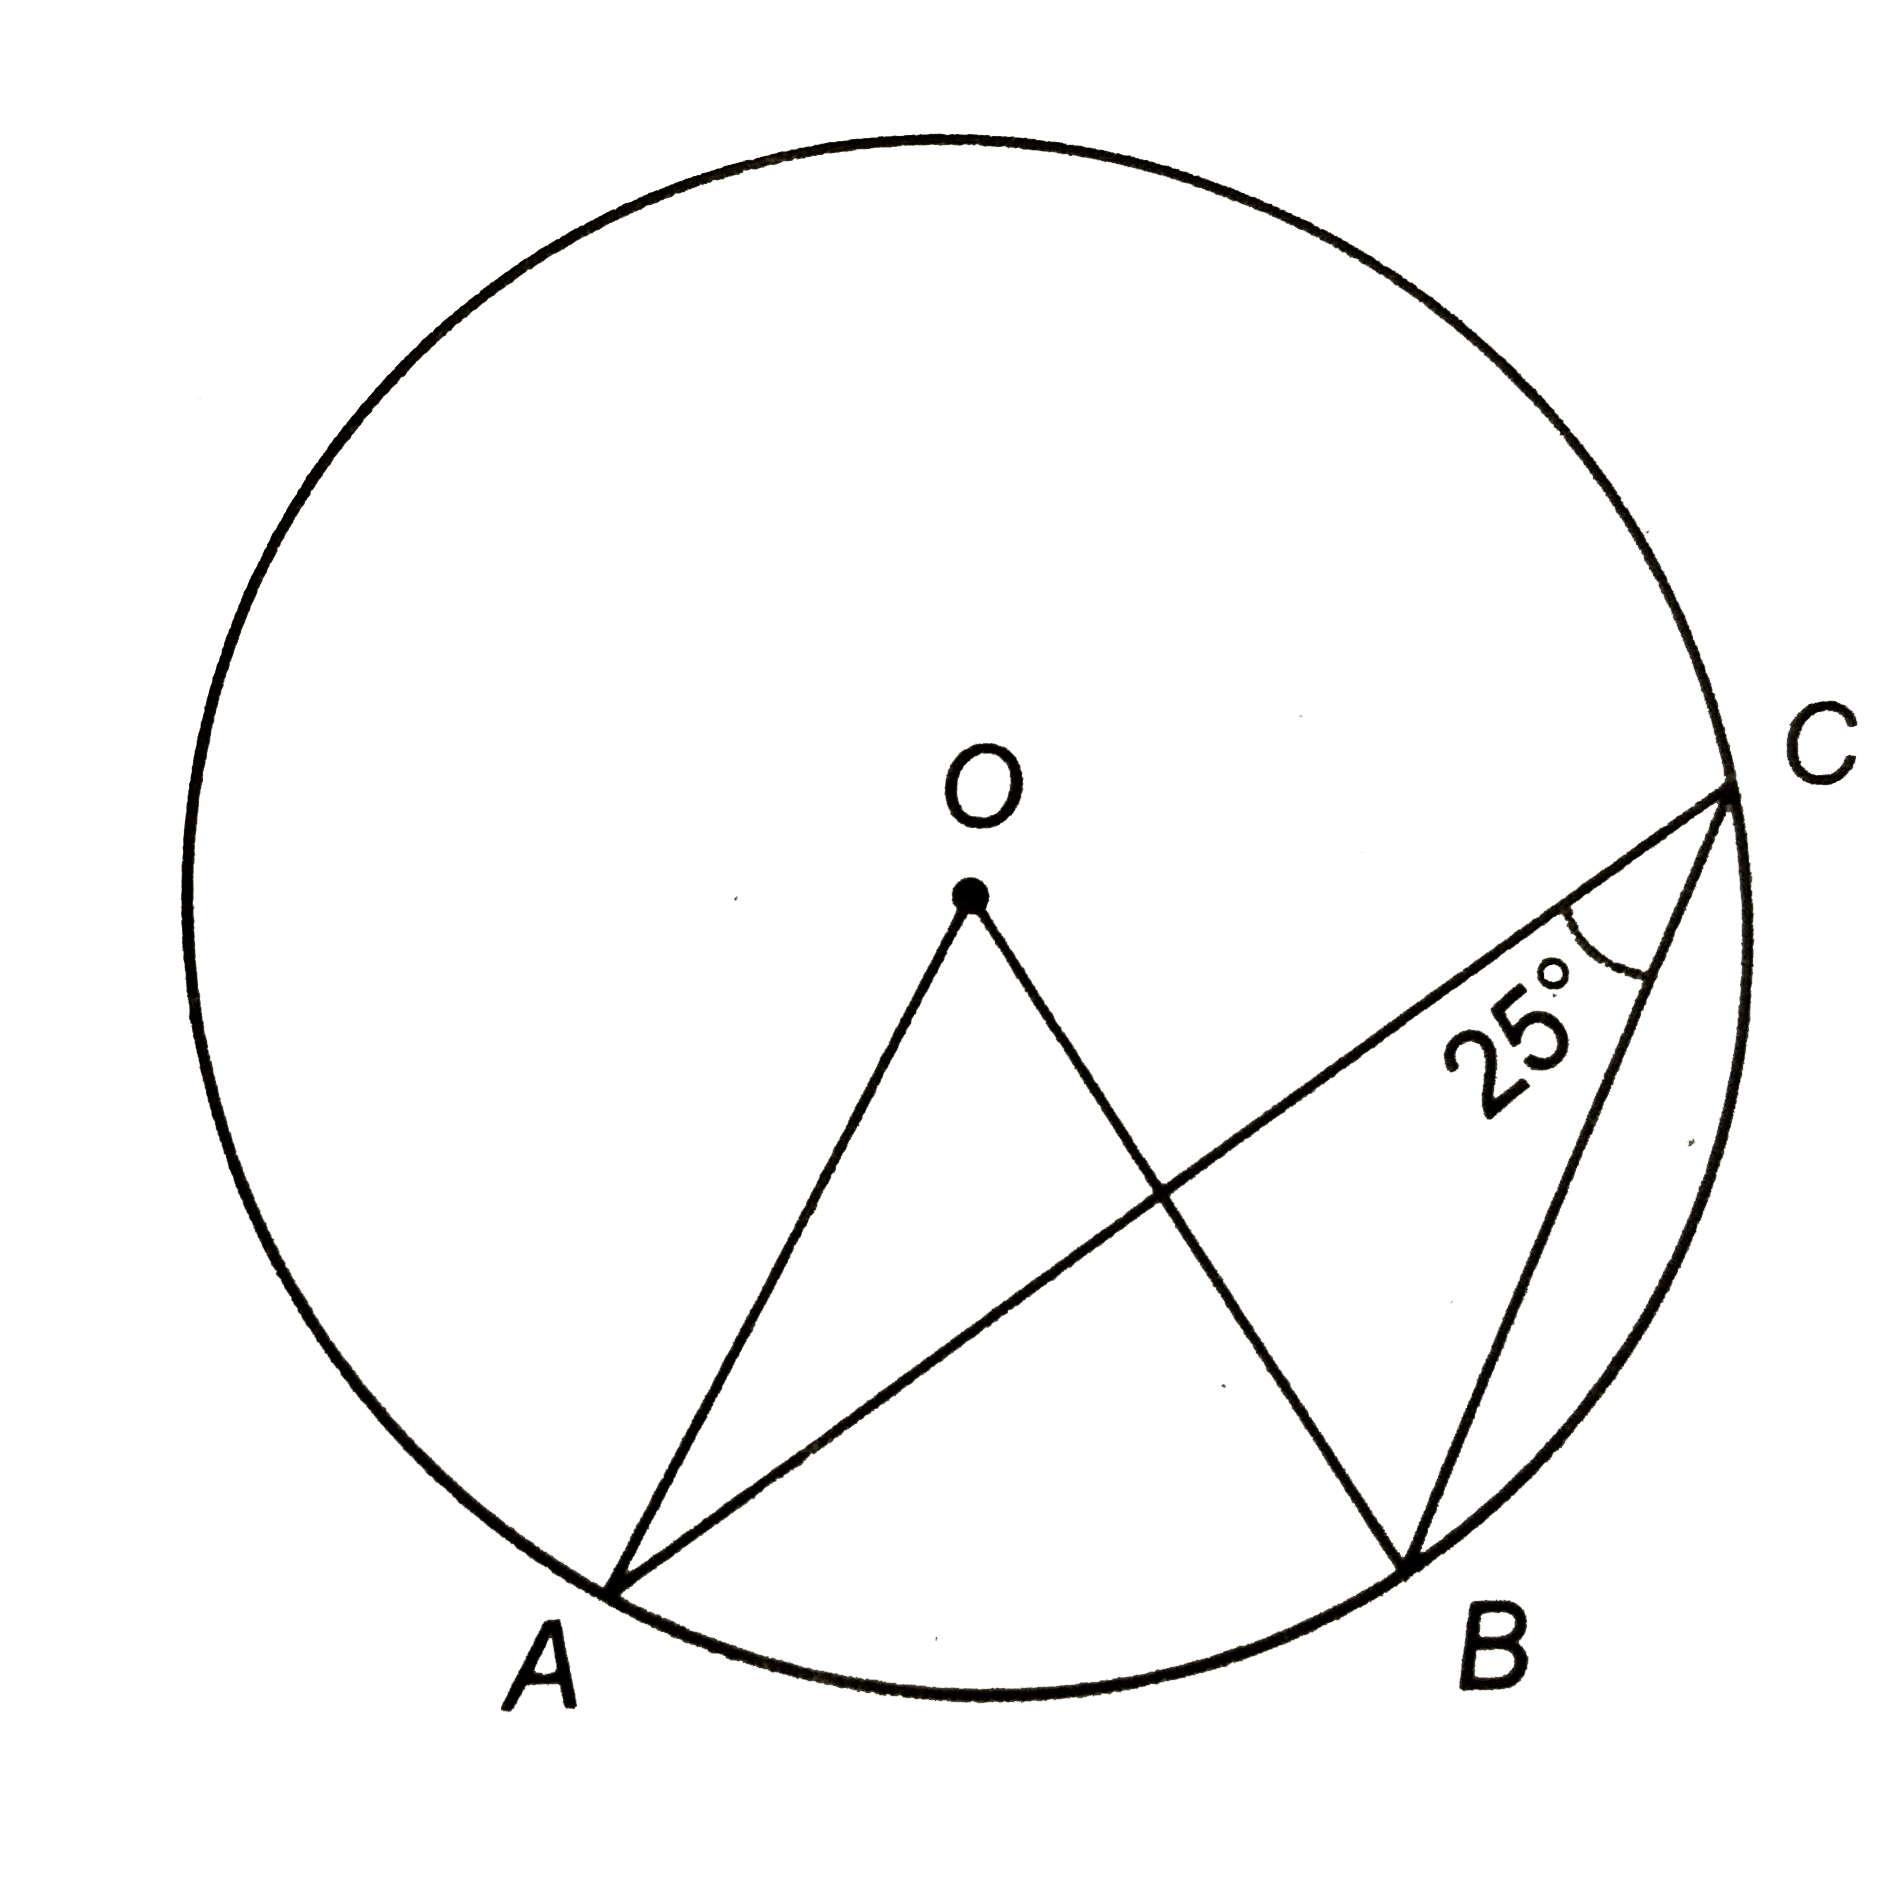 संलग्न चित्र में, 'O' वृत्त का केन्द्र है | यदि angleACB=25^(@), तो angle AOB ज्ञात कीजिए |